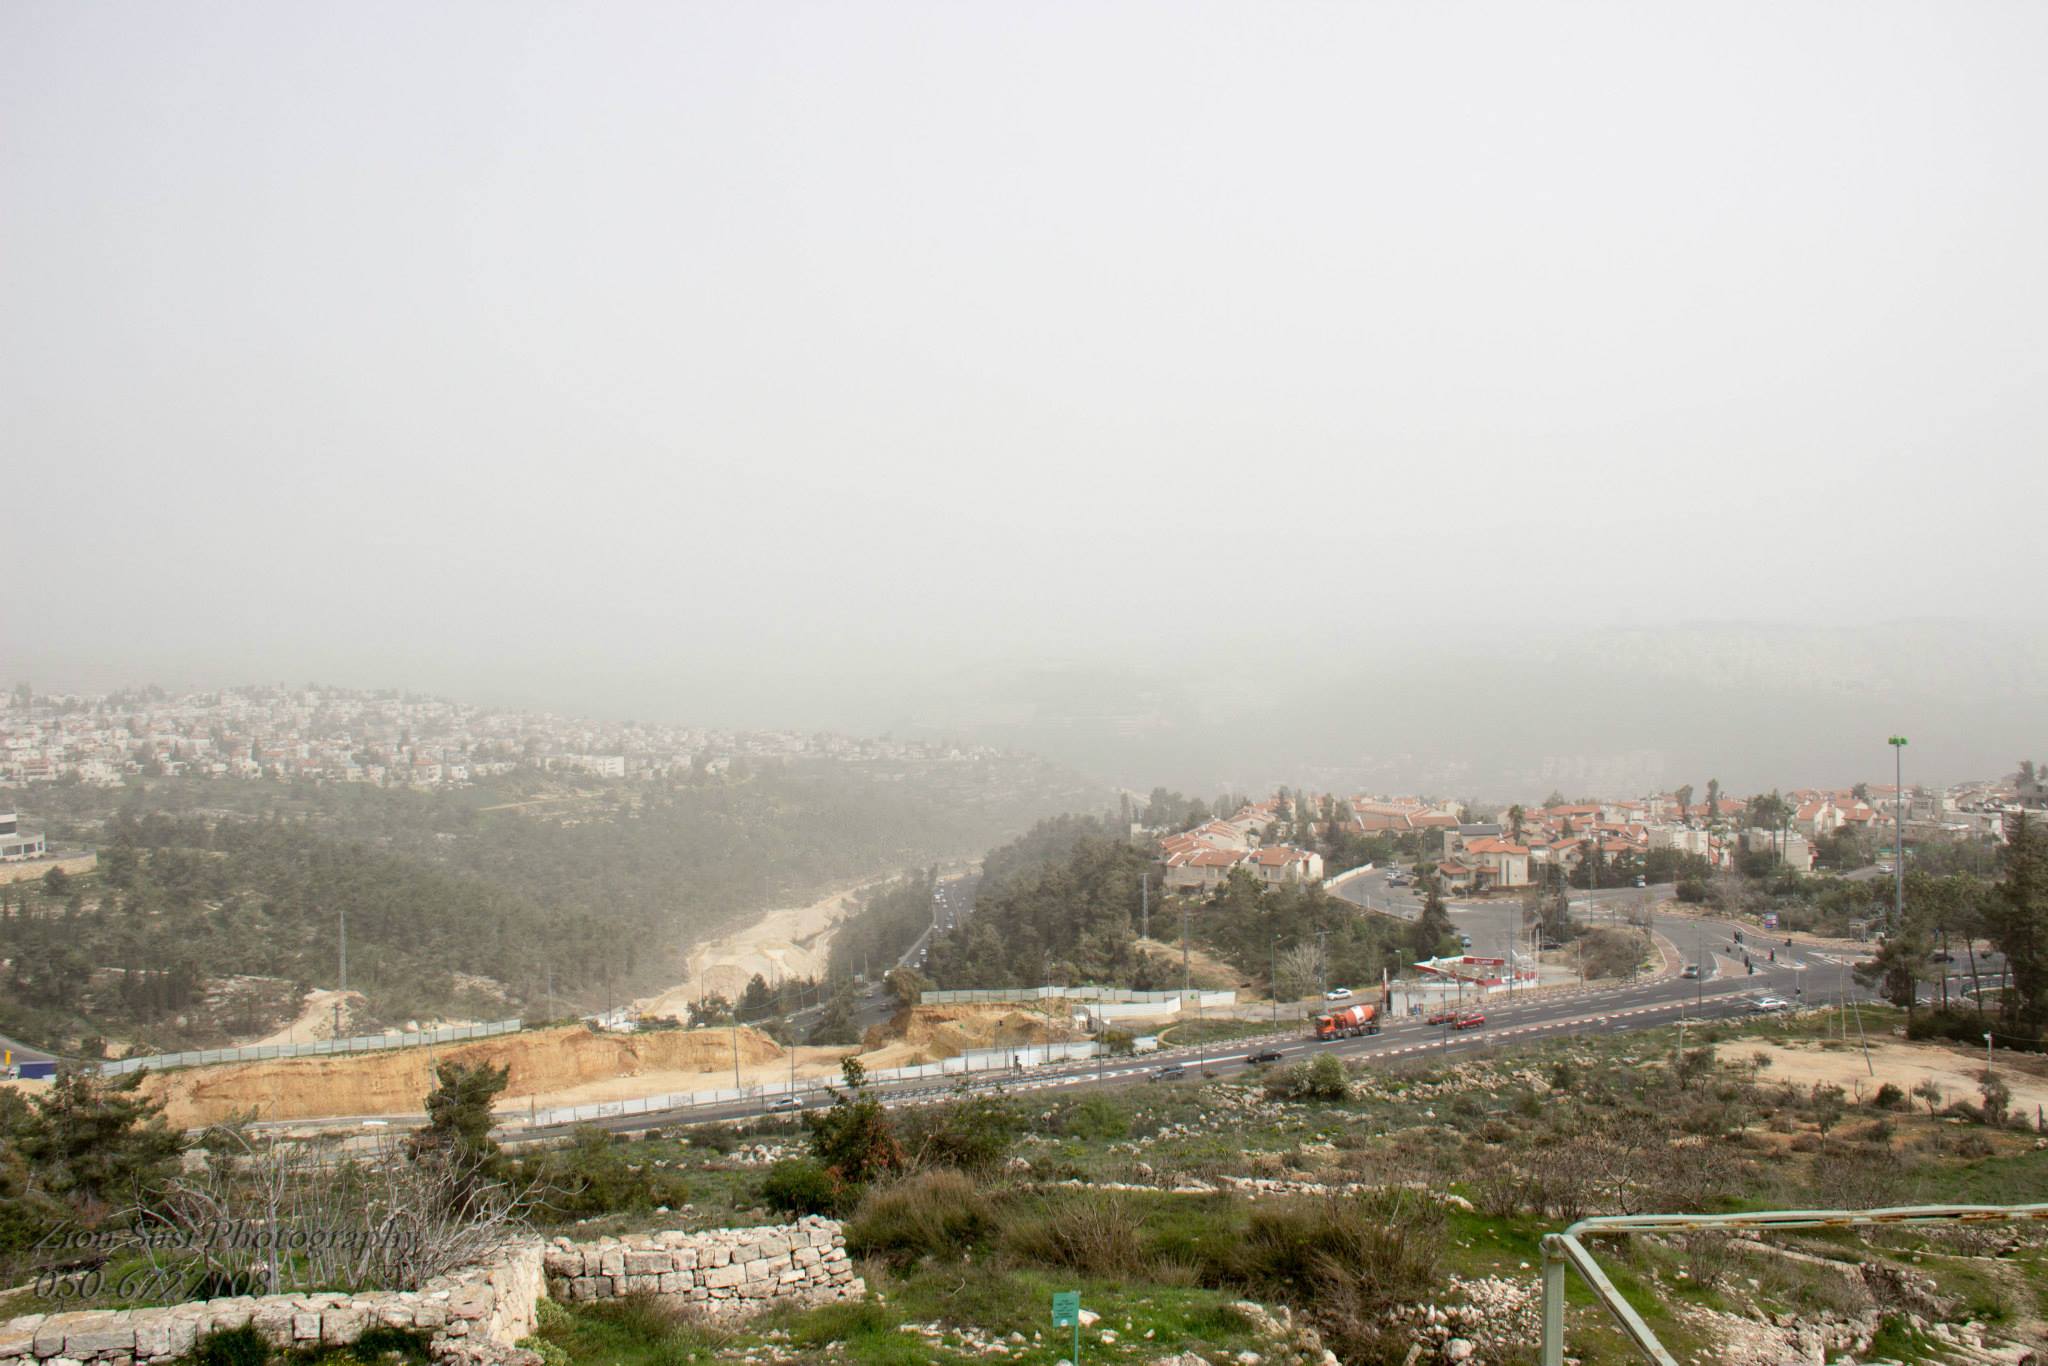 כביש 1 המוביל לירושלים כפי שנצפה מהקסטל.